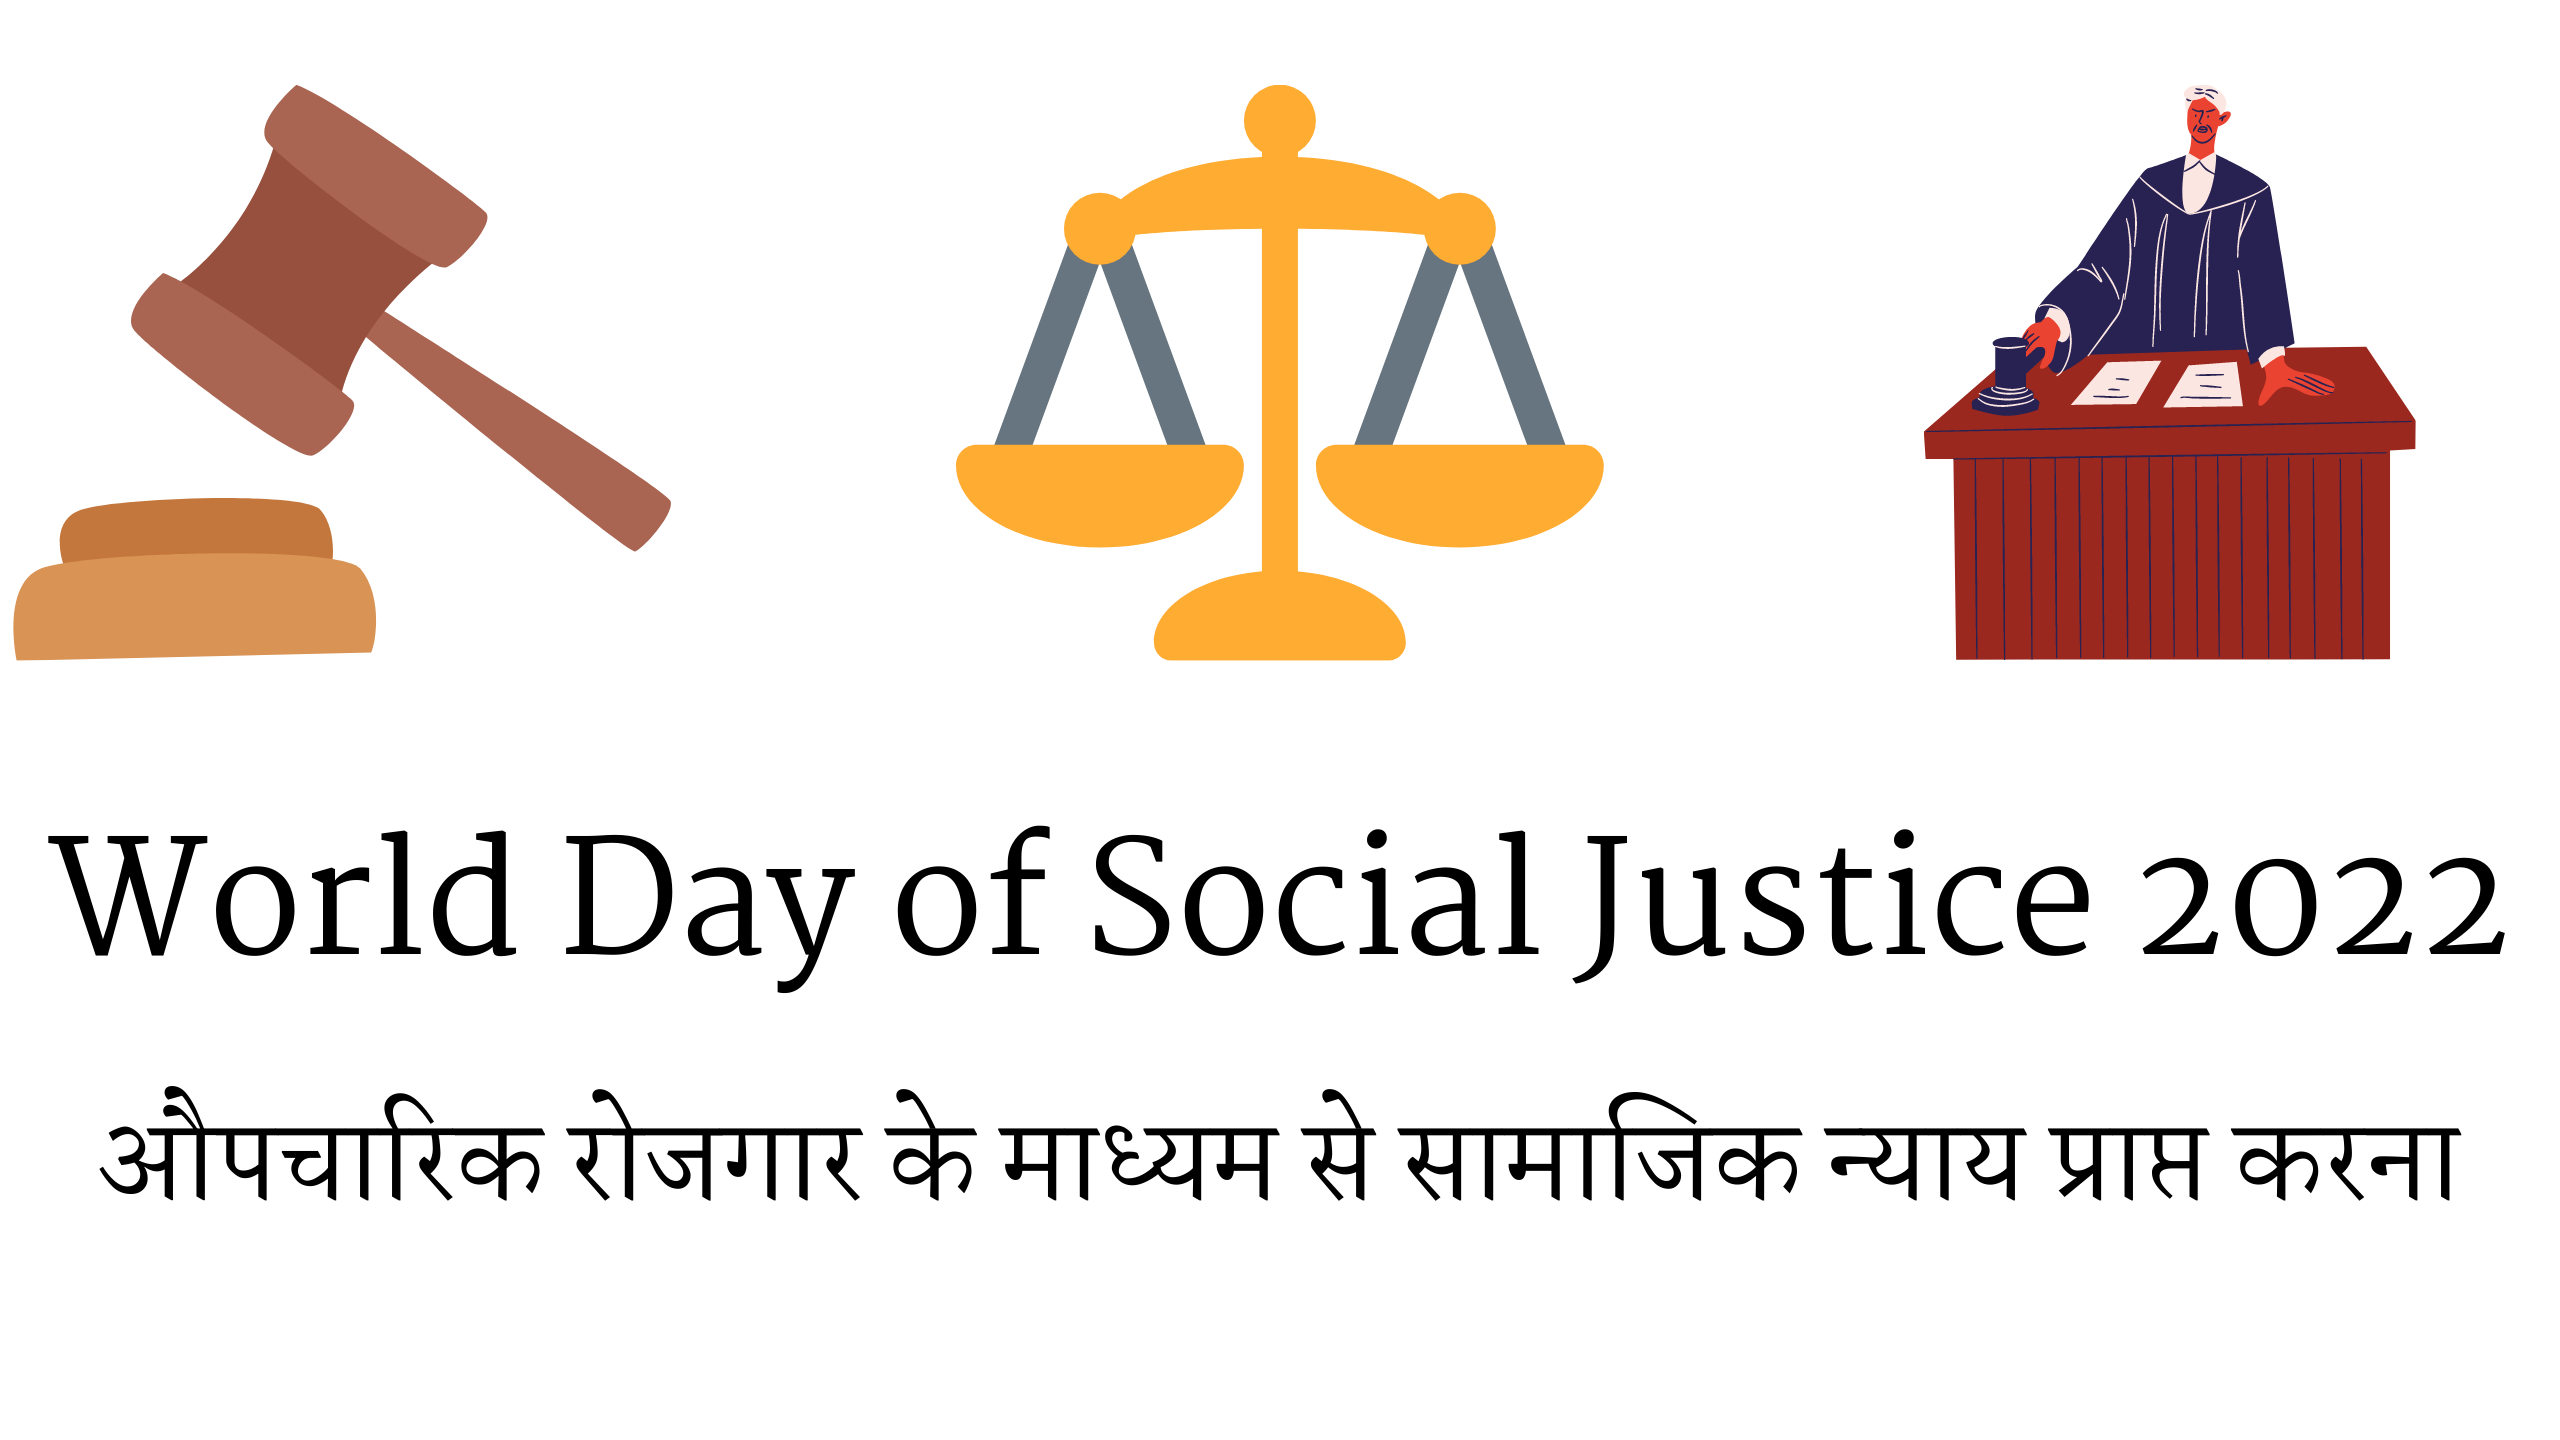 World Day of Social Justice 2022 औपचारिक रोजगार के माध्यम से सामाजिक न्याय प्राप्त करना